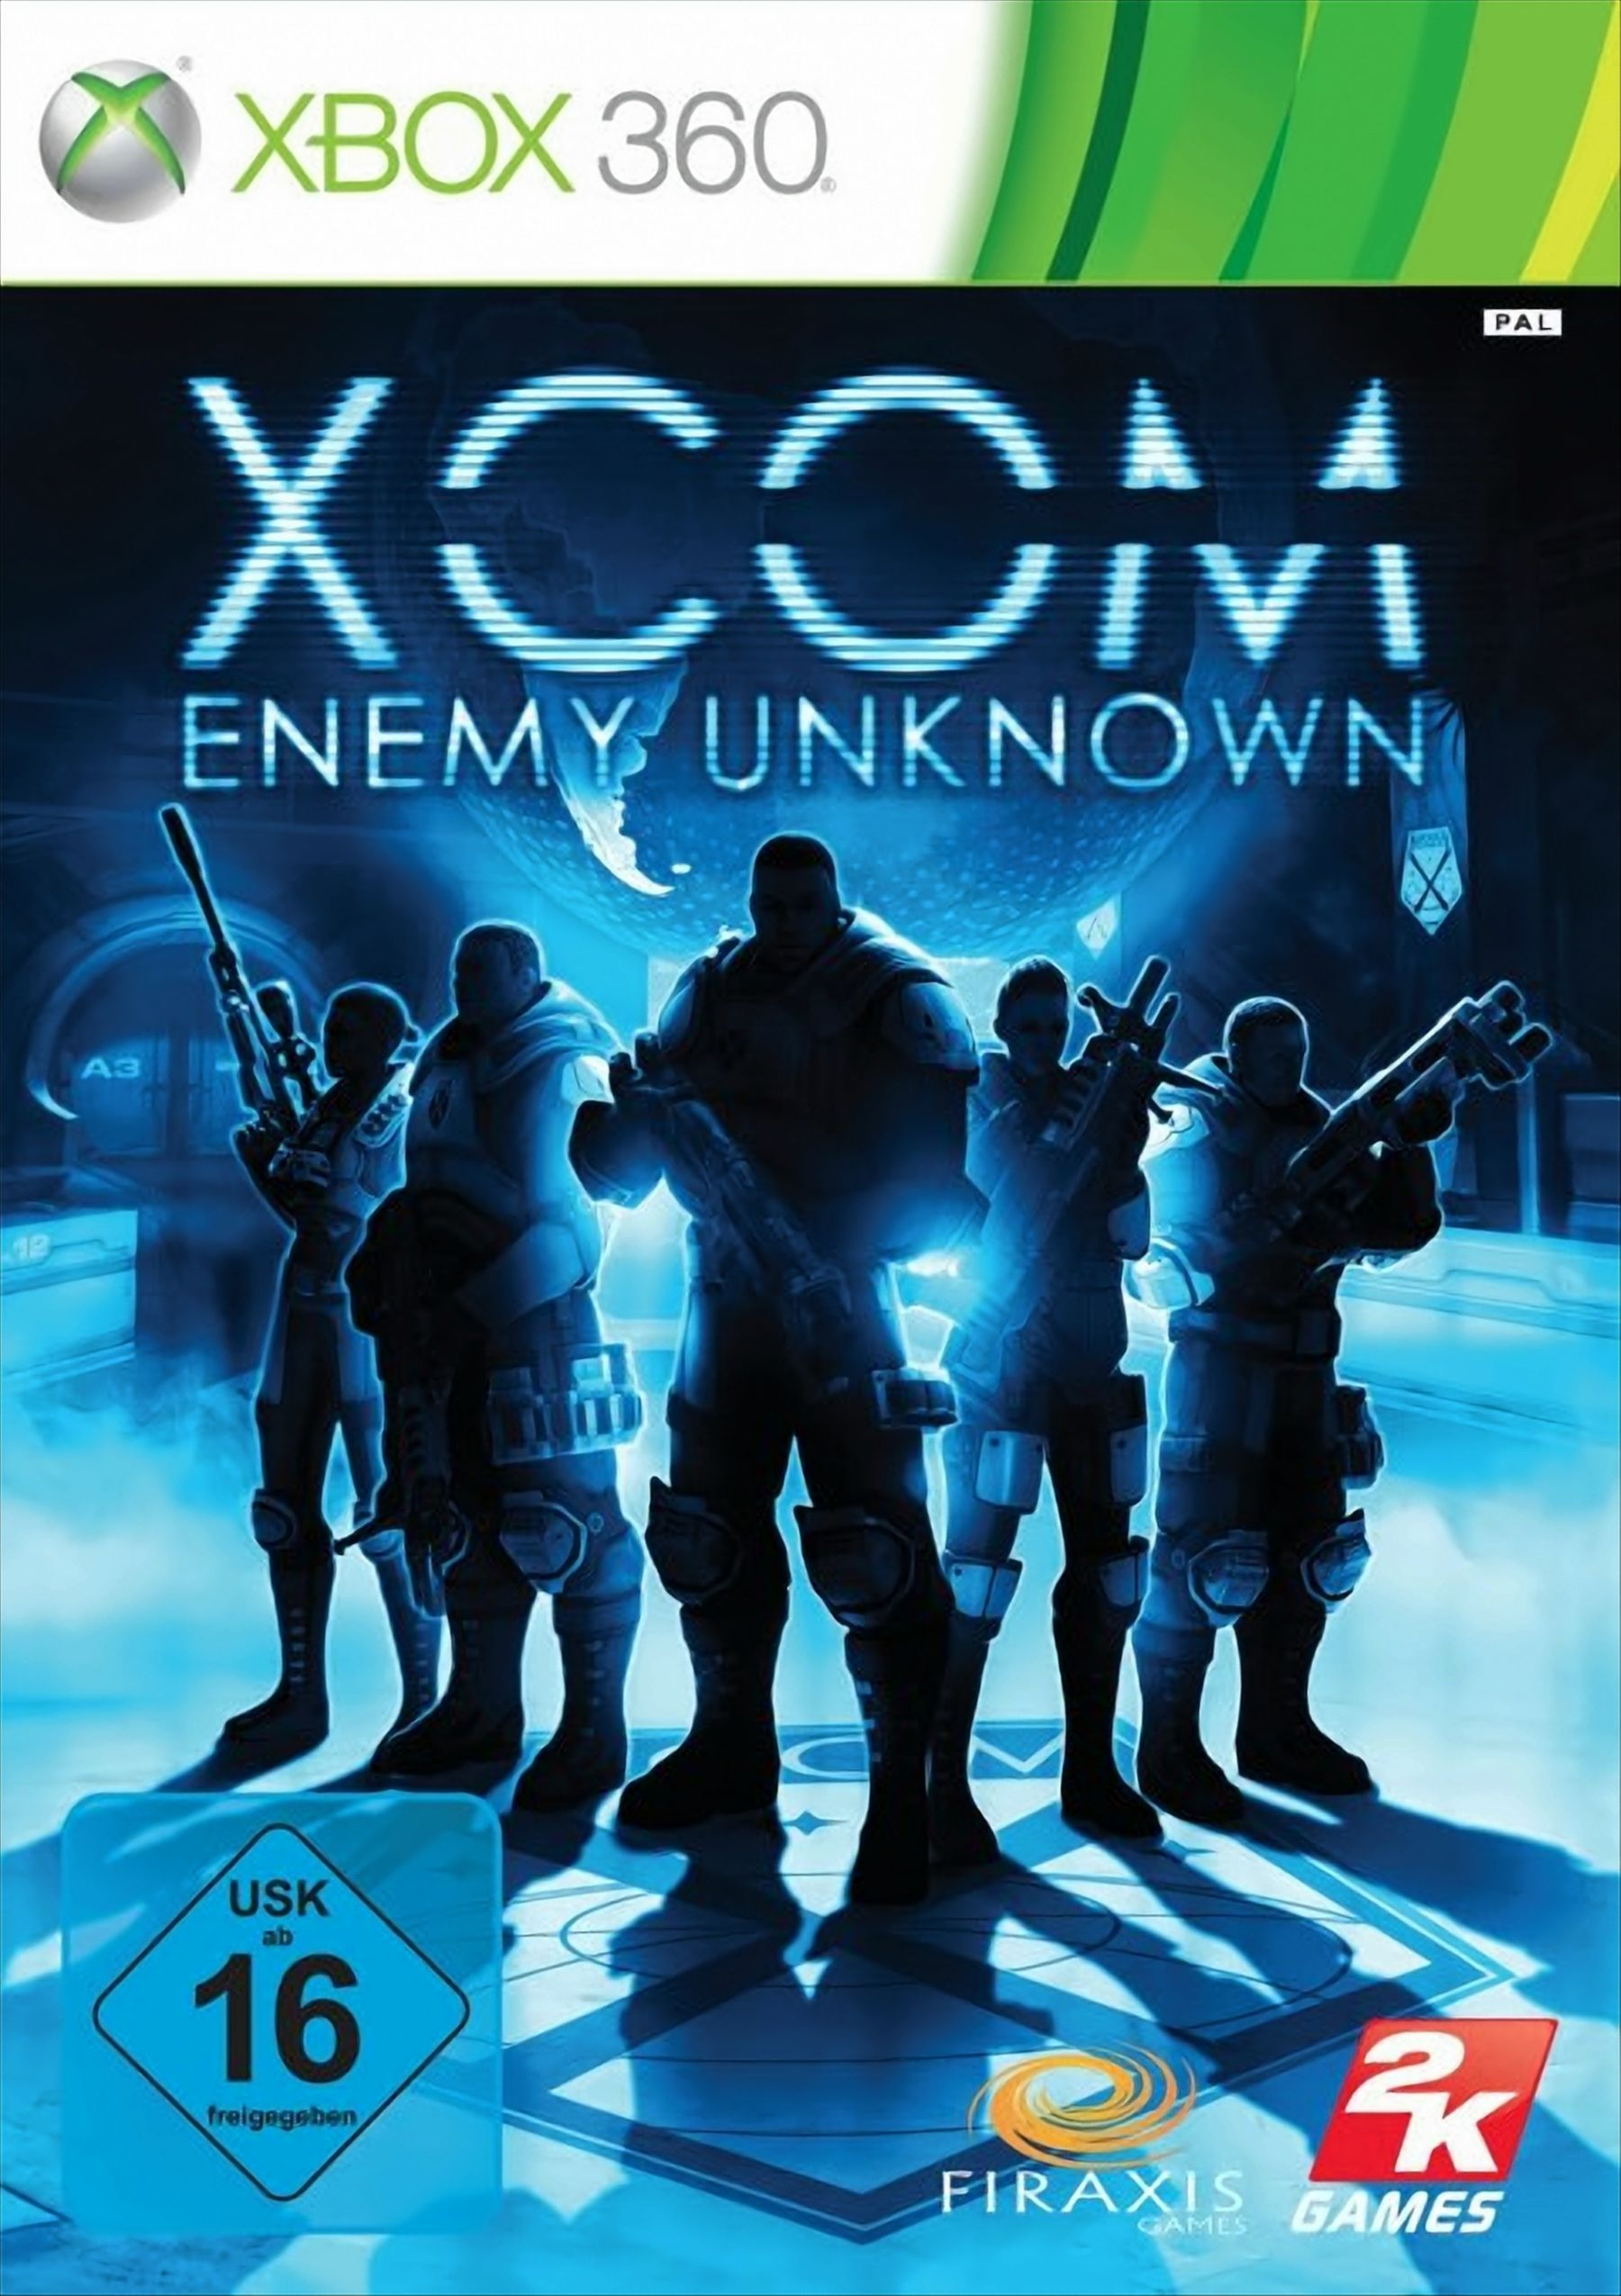 360] Unknown - XCOM: Enemy [Xbox